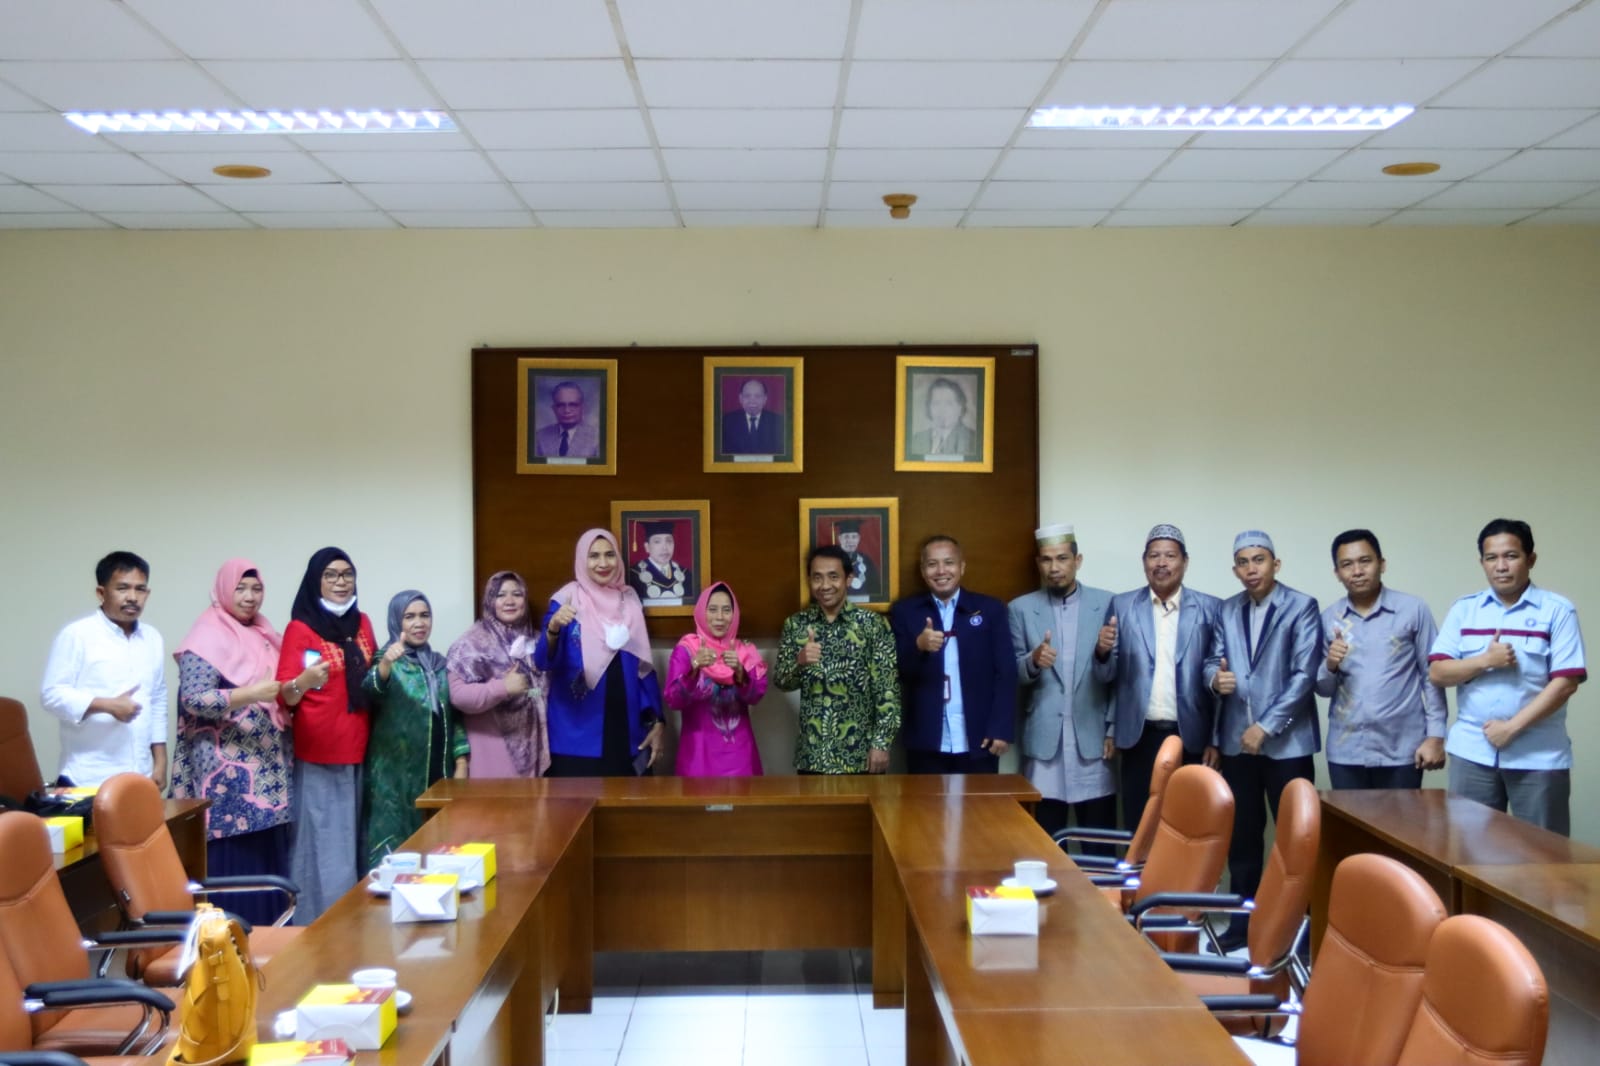 SPs IPB University Terima Kunjungan dari Pascasarjana IAIN Sultan Amai Gorontalo, Bahas Pengembangan Program Studi dan Akademik